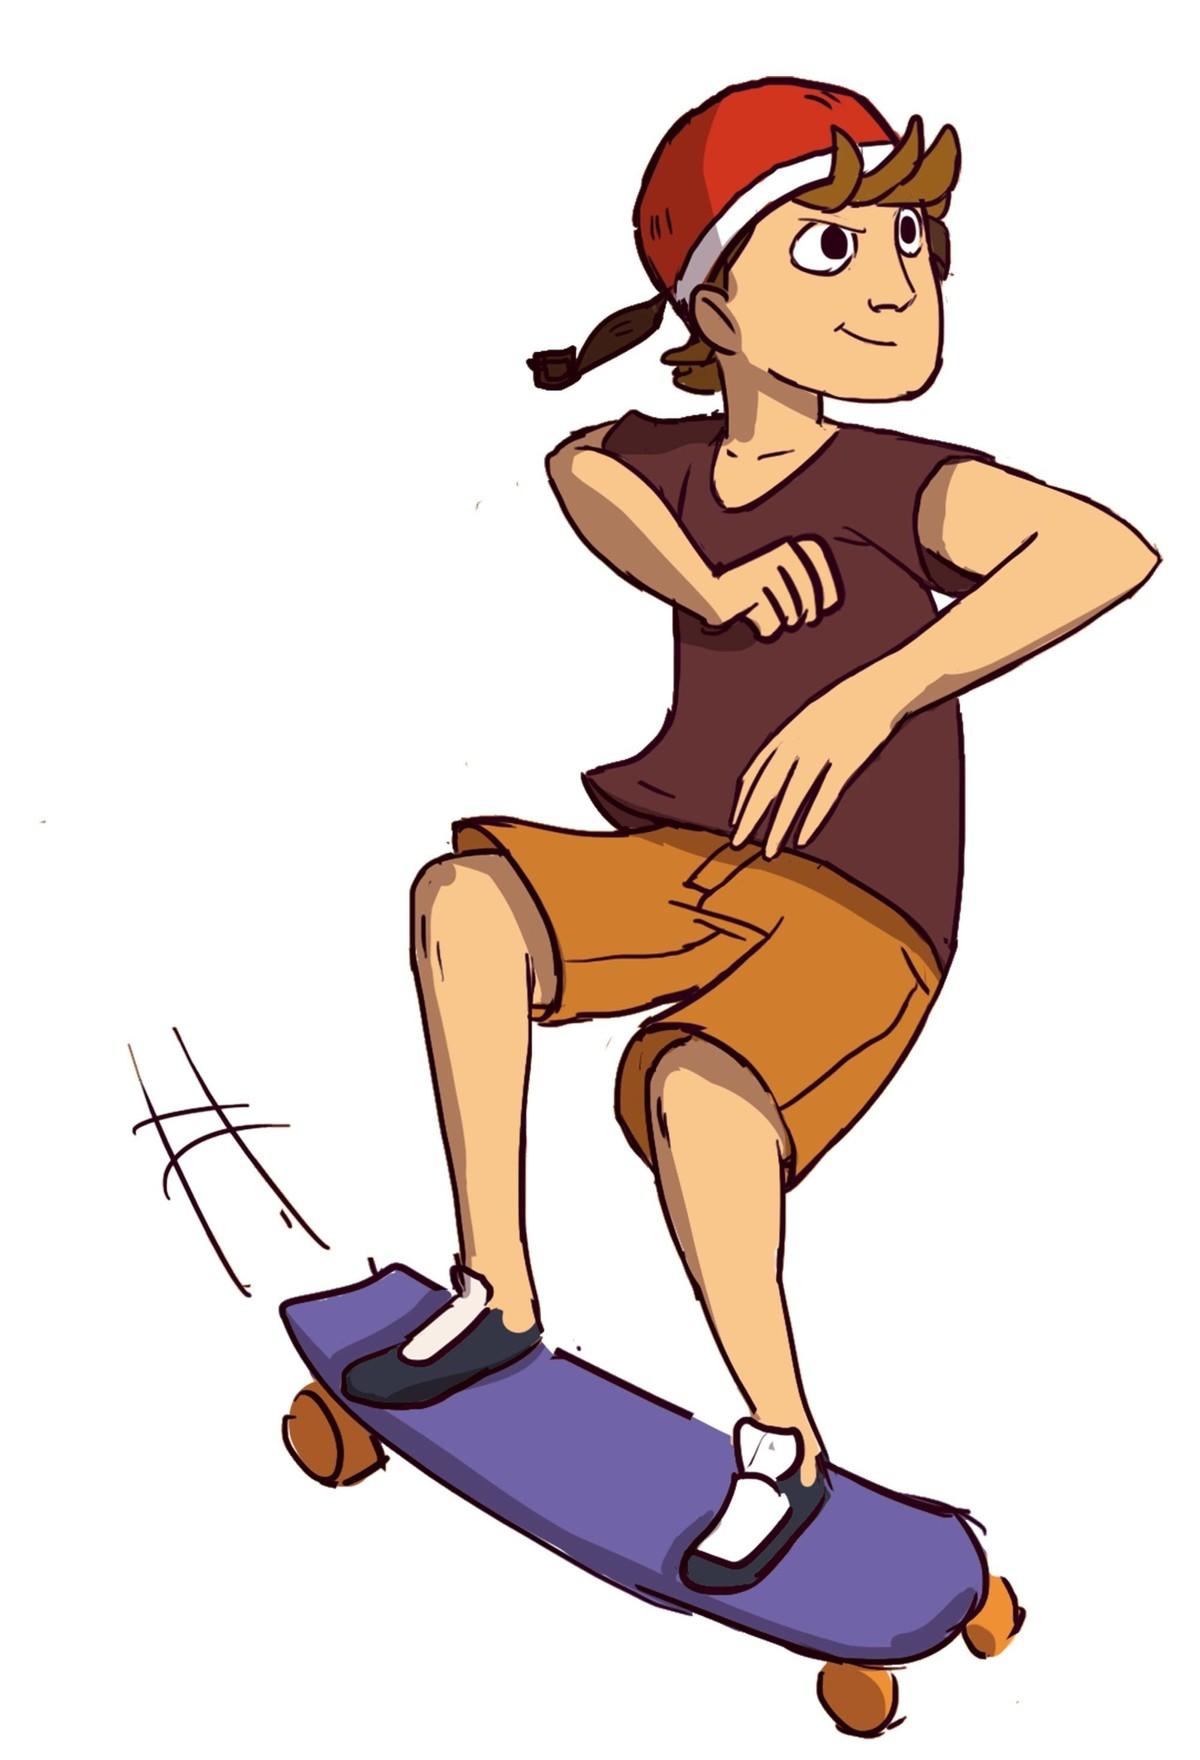 Dessin d'un jeune homme faisant du skate.